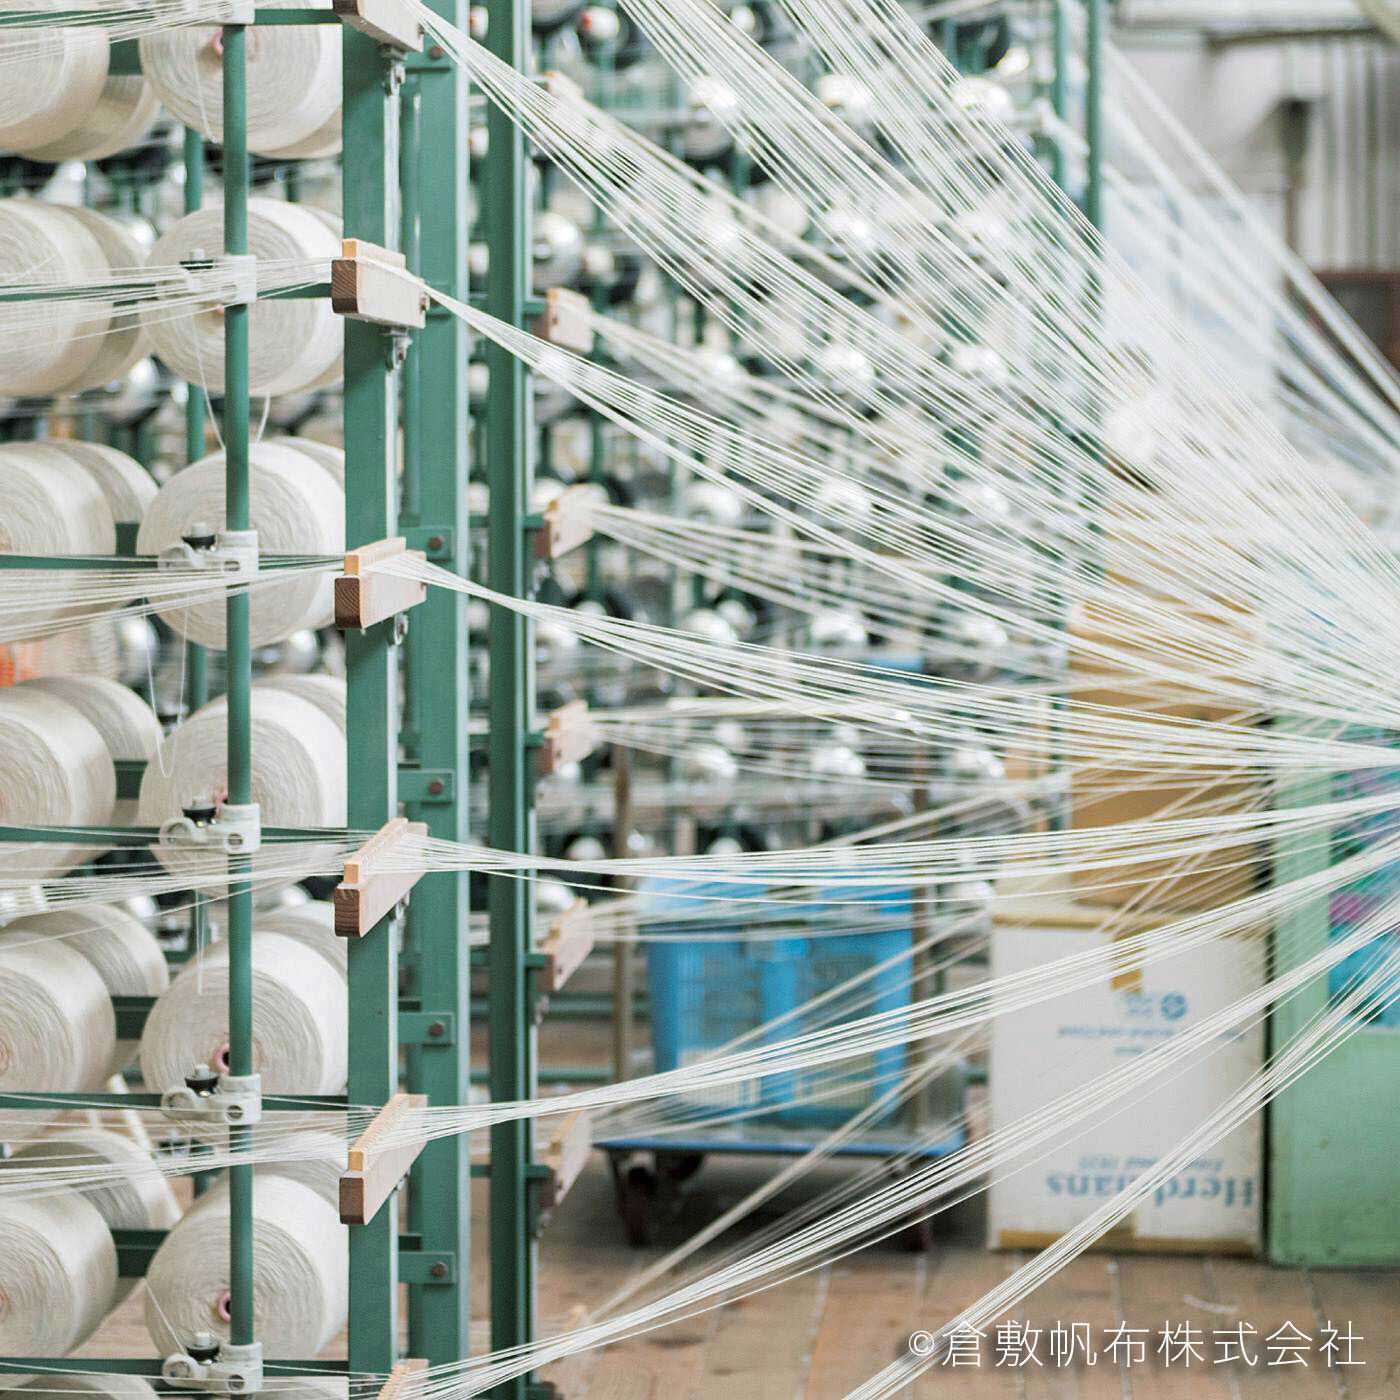 el:ment|el:ment　倉敷帆布と本革遣い　ショルダー遣いもできる　ワイド持ち手のワンハンドバッグ〈スズ〉|日本随一の綿帆布の生産地、倉敷・児島で作られる倉敷帆布。築90年の工場にある1960年代製のシャトル織機は、大切に修理を重ねながら今日も活躍中。職人は「音やにおいからも機械のコンディションがわかる」といいます。